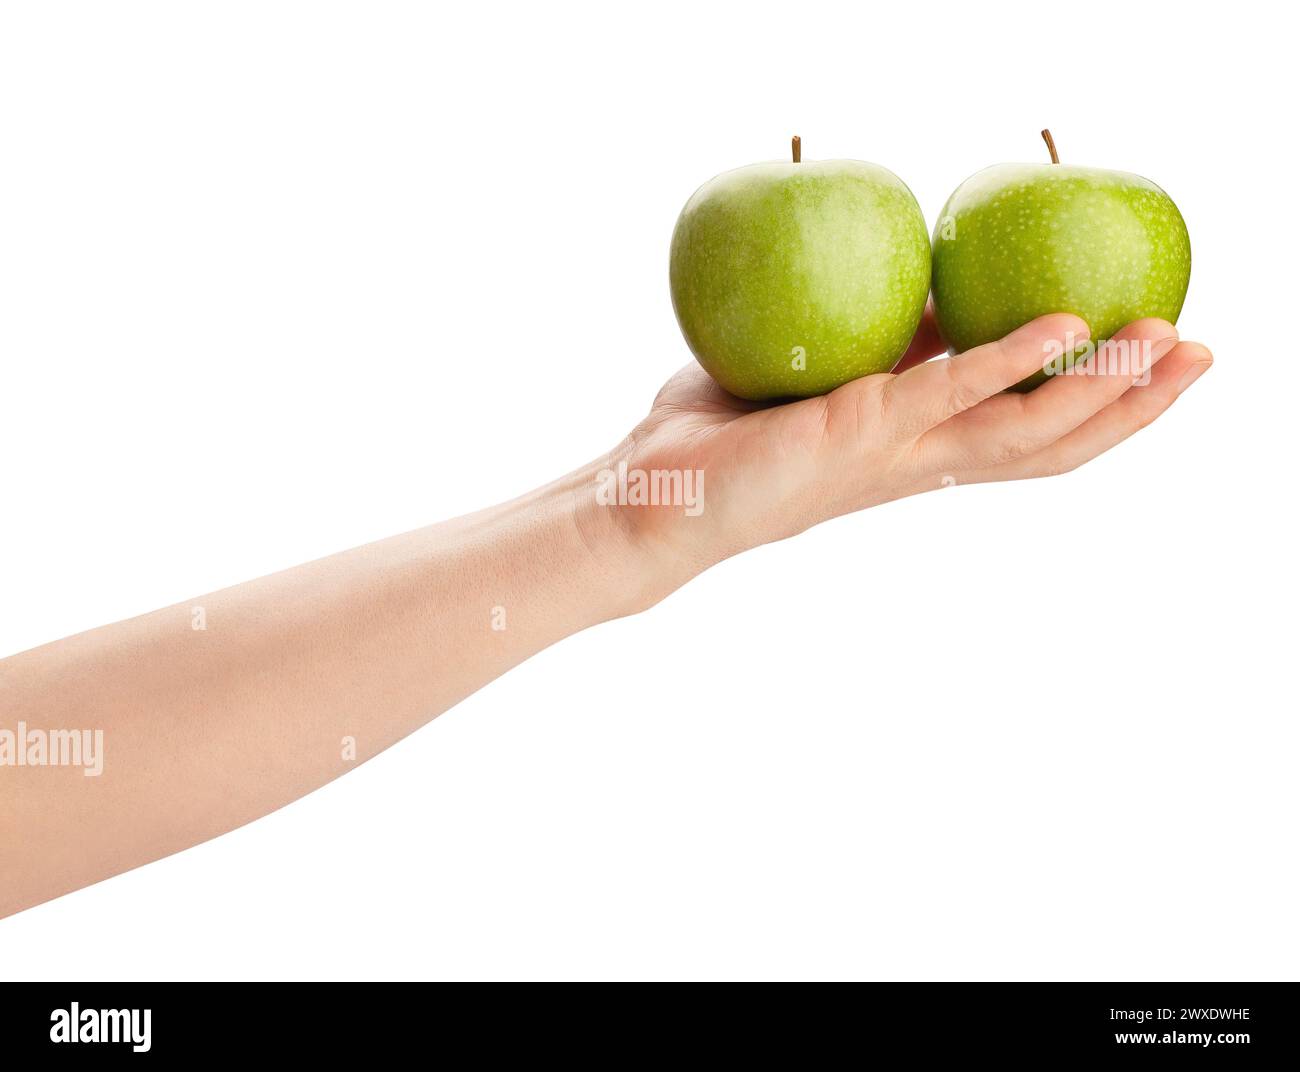 Oma smith Apfel in der Hand Weg isoliert auf weiß Stockfoto